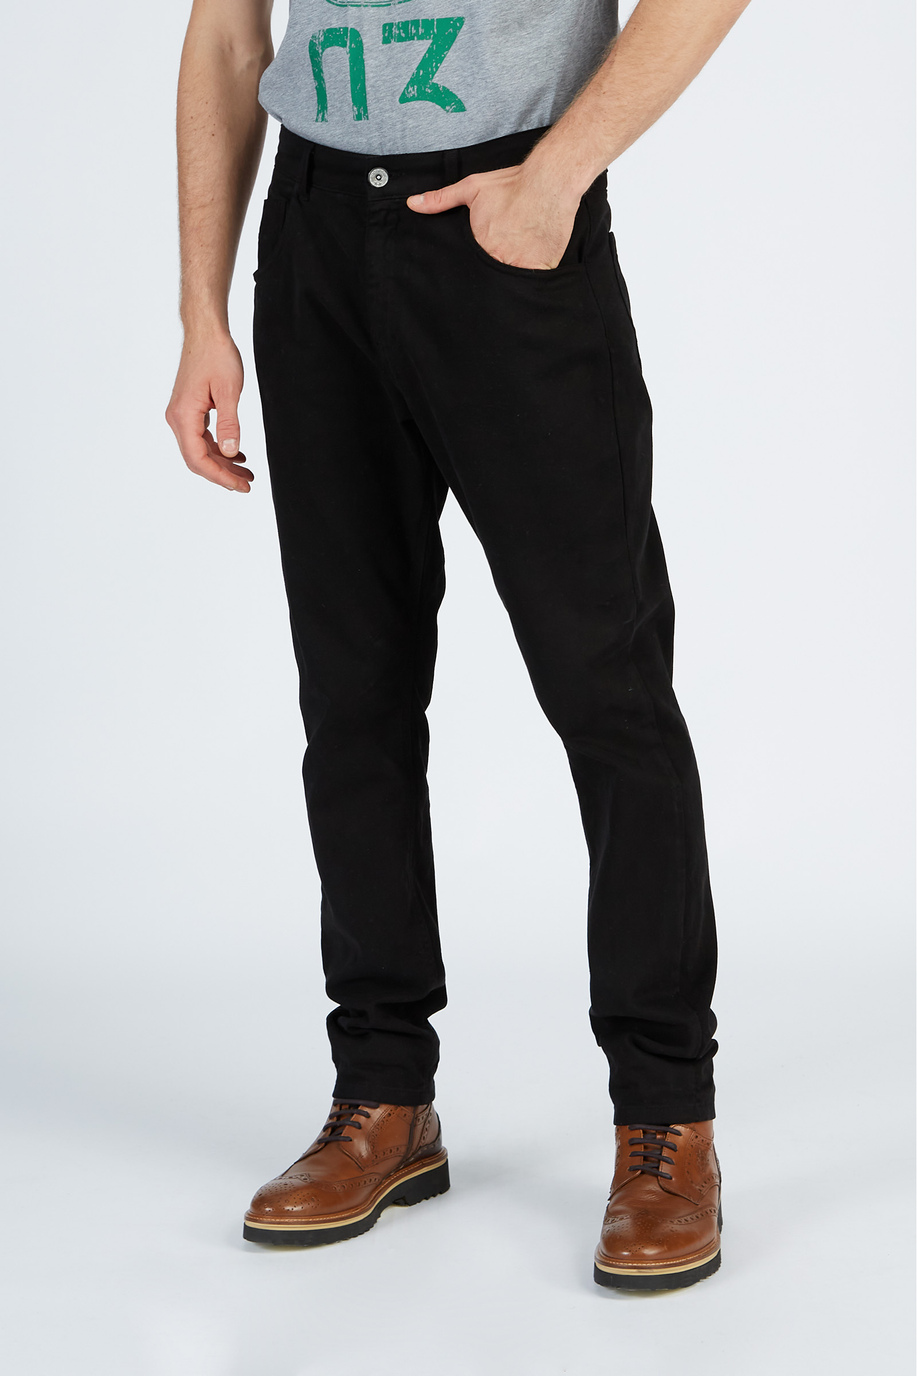 Pantalone da uomo in cotone stretch modello chino regular fit - Look eleganti per lui | La Martina - Official Online Shop